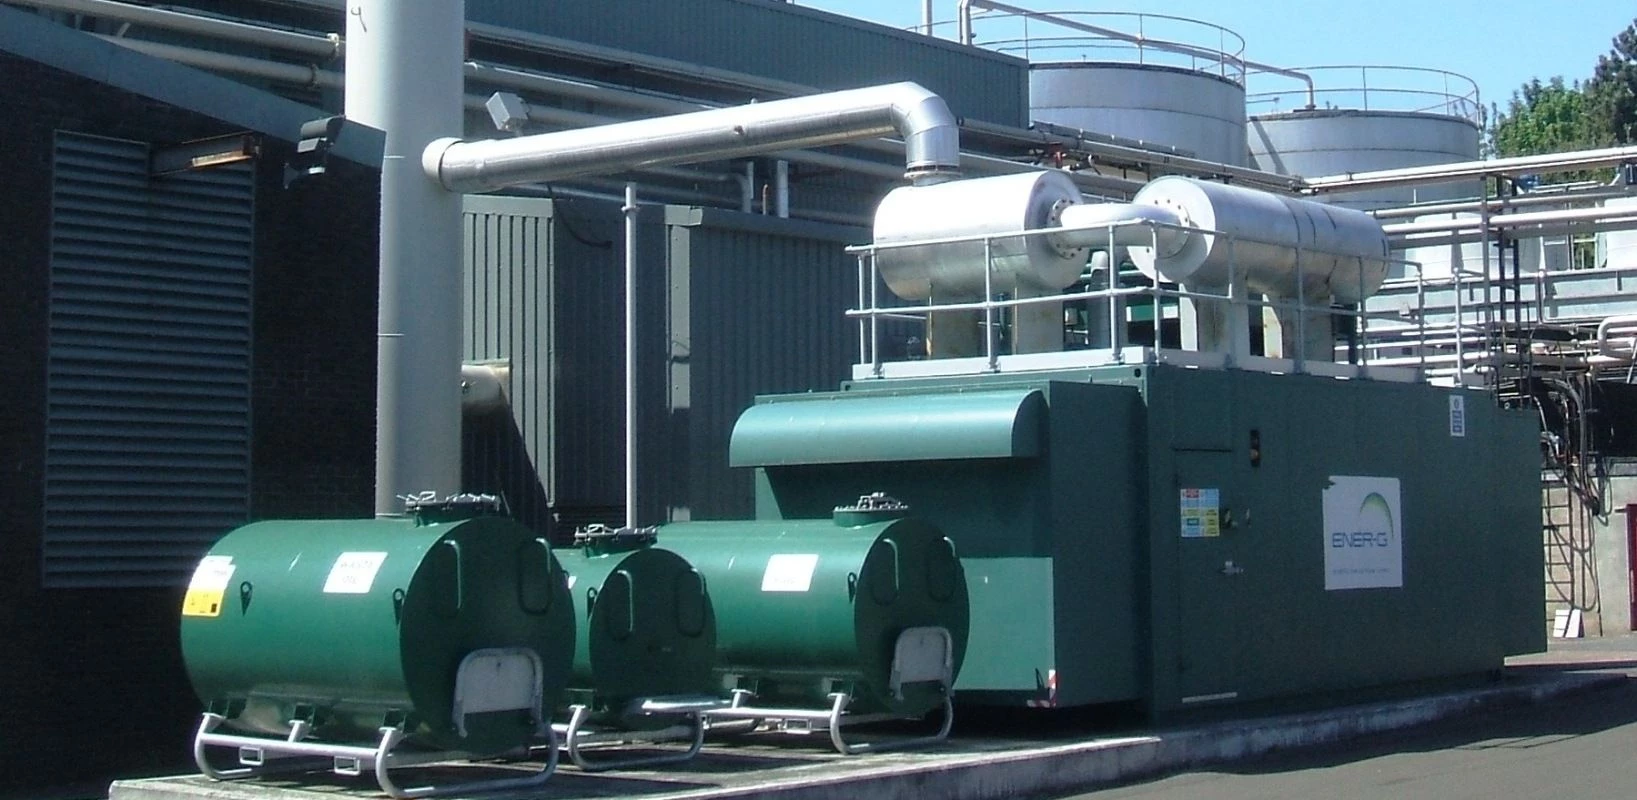 ENER-G biogas generation system at North British Distillery